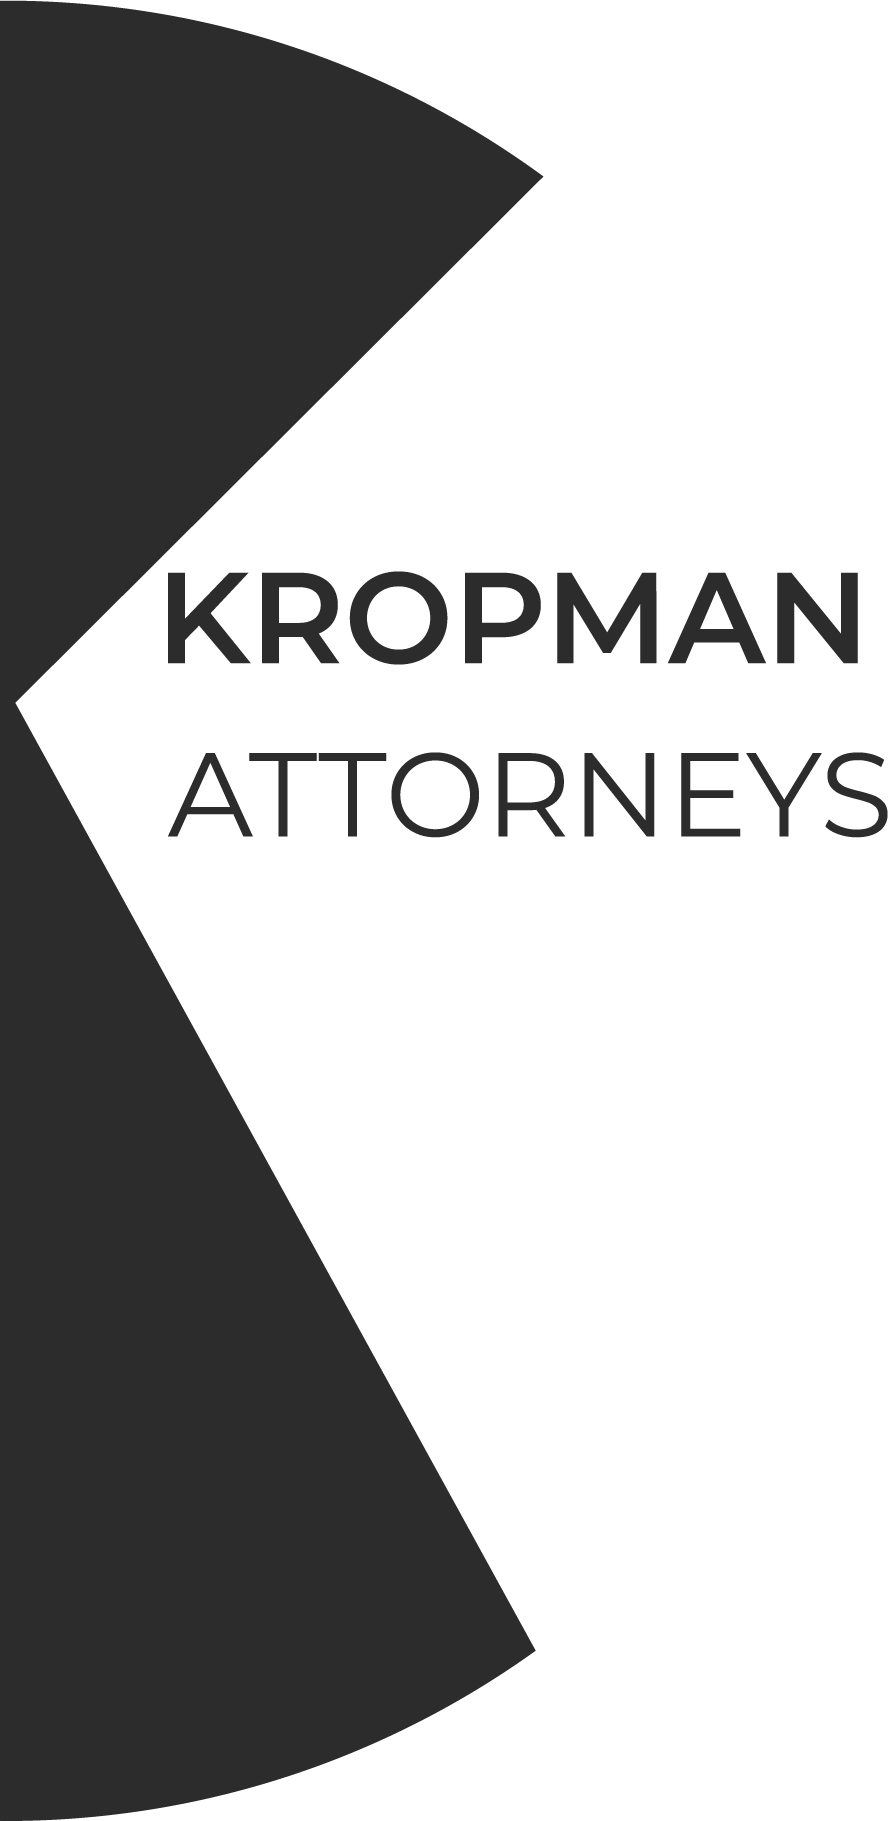 Kropman Attorneys